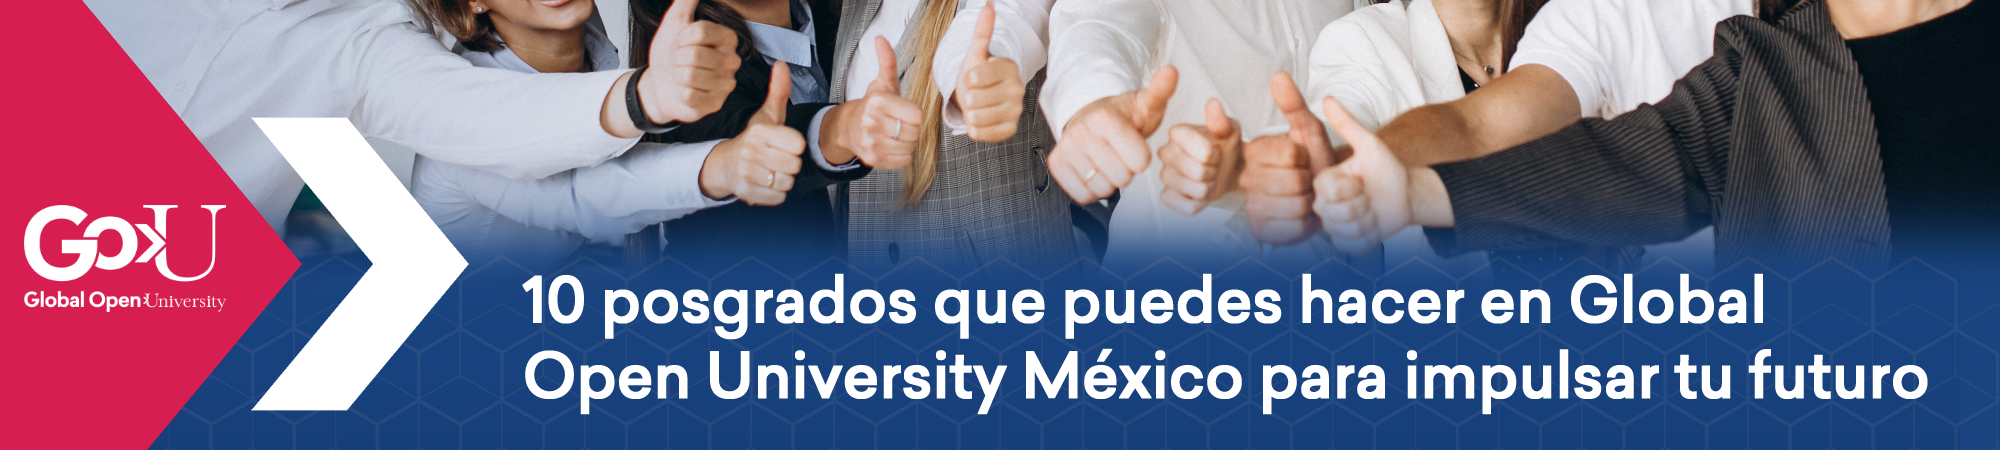 10 posgrados que puedes hacer en Global Open University México para impulsar tu futuro